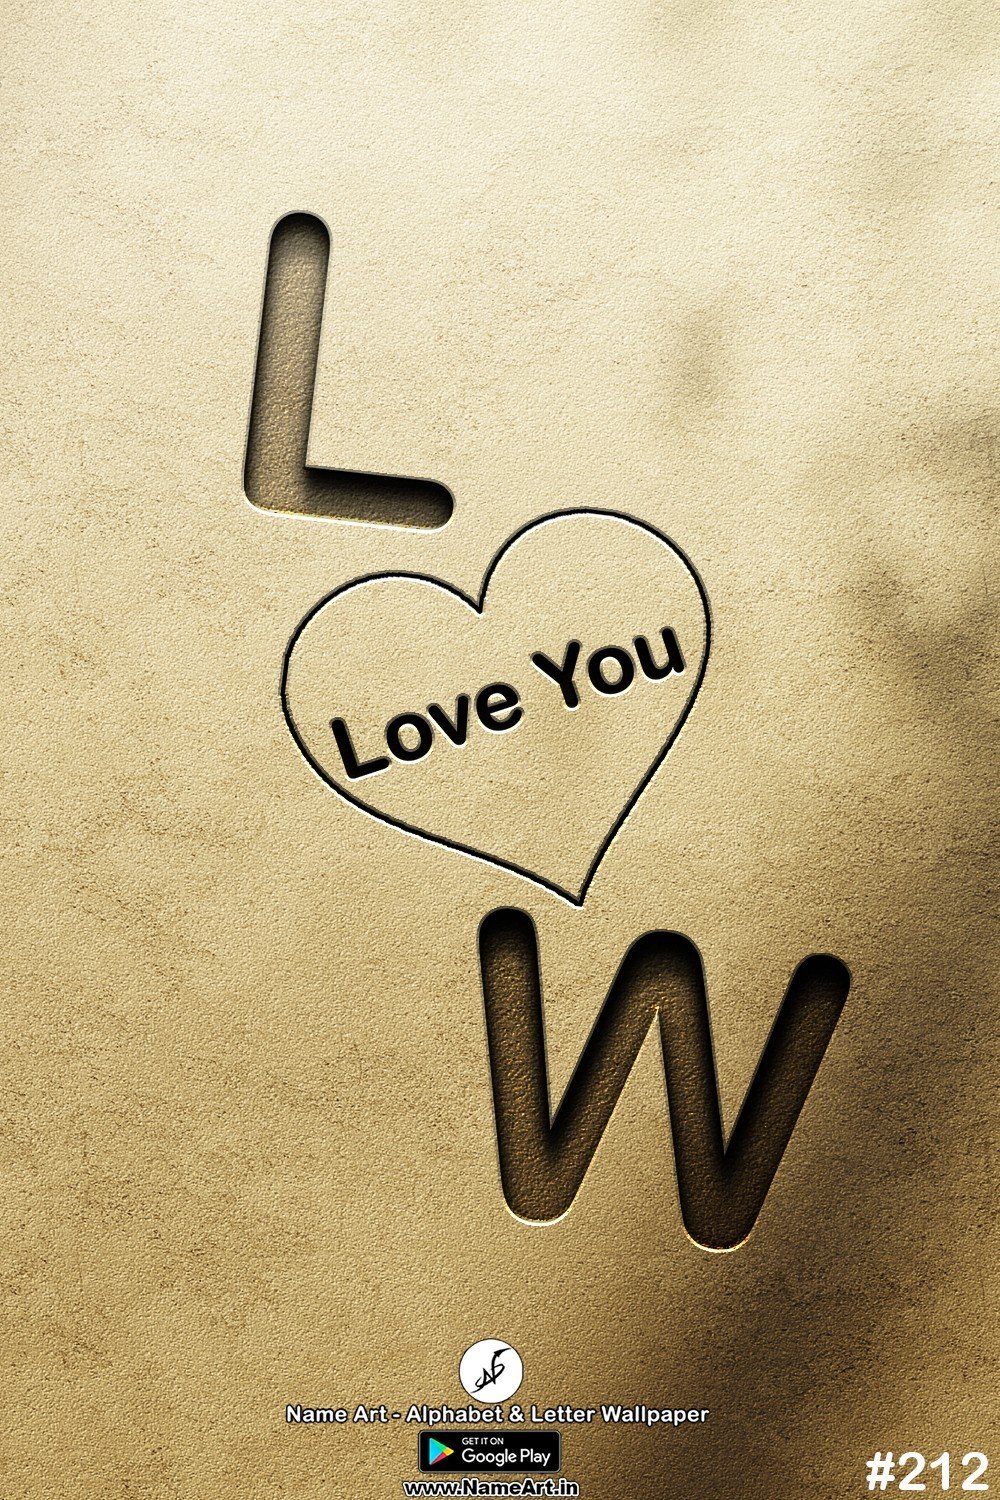 LW | Whatsapp Status DP LW | LW Love Status Cute Couple Whatsapp Status DP !! | New Whatsapp Status DP LW Images |